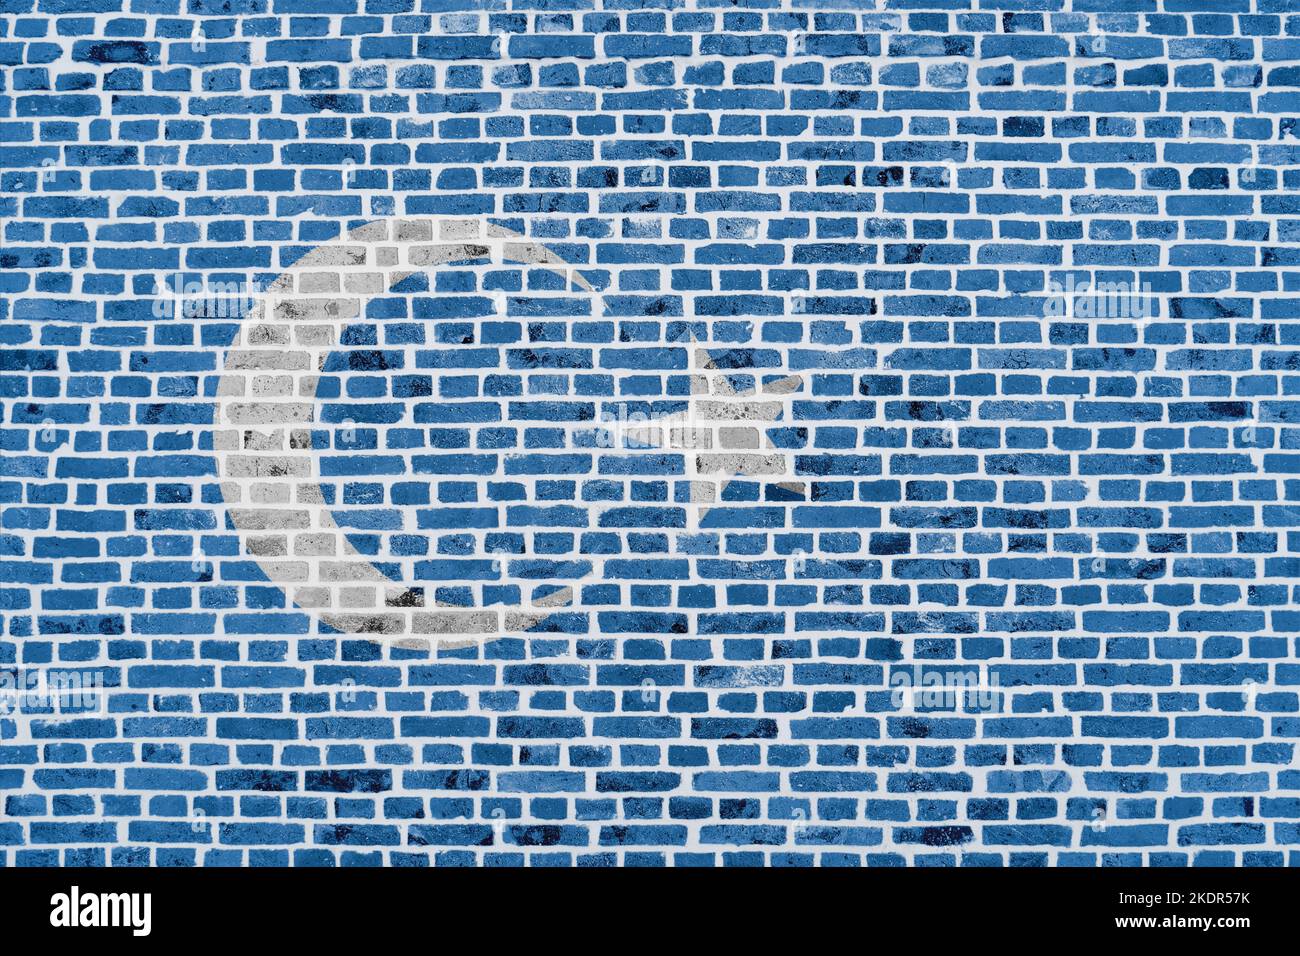 Gros plan sur un mur de briques avec le drapeau d'Uyghur peint dessus. Banque D'Images